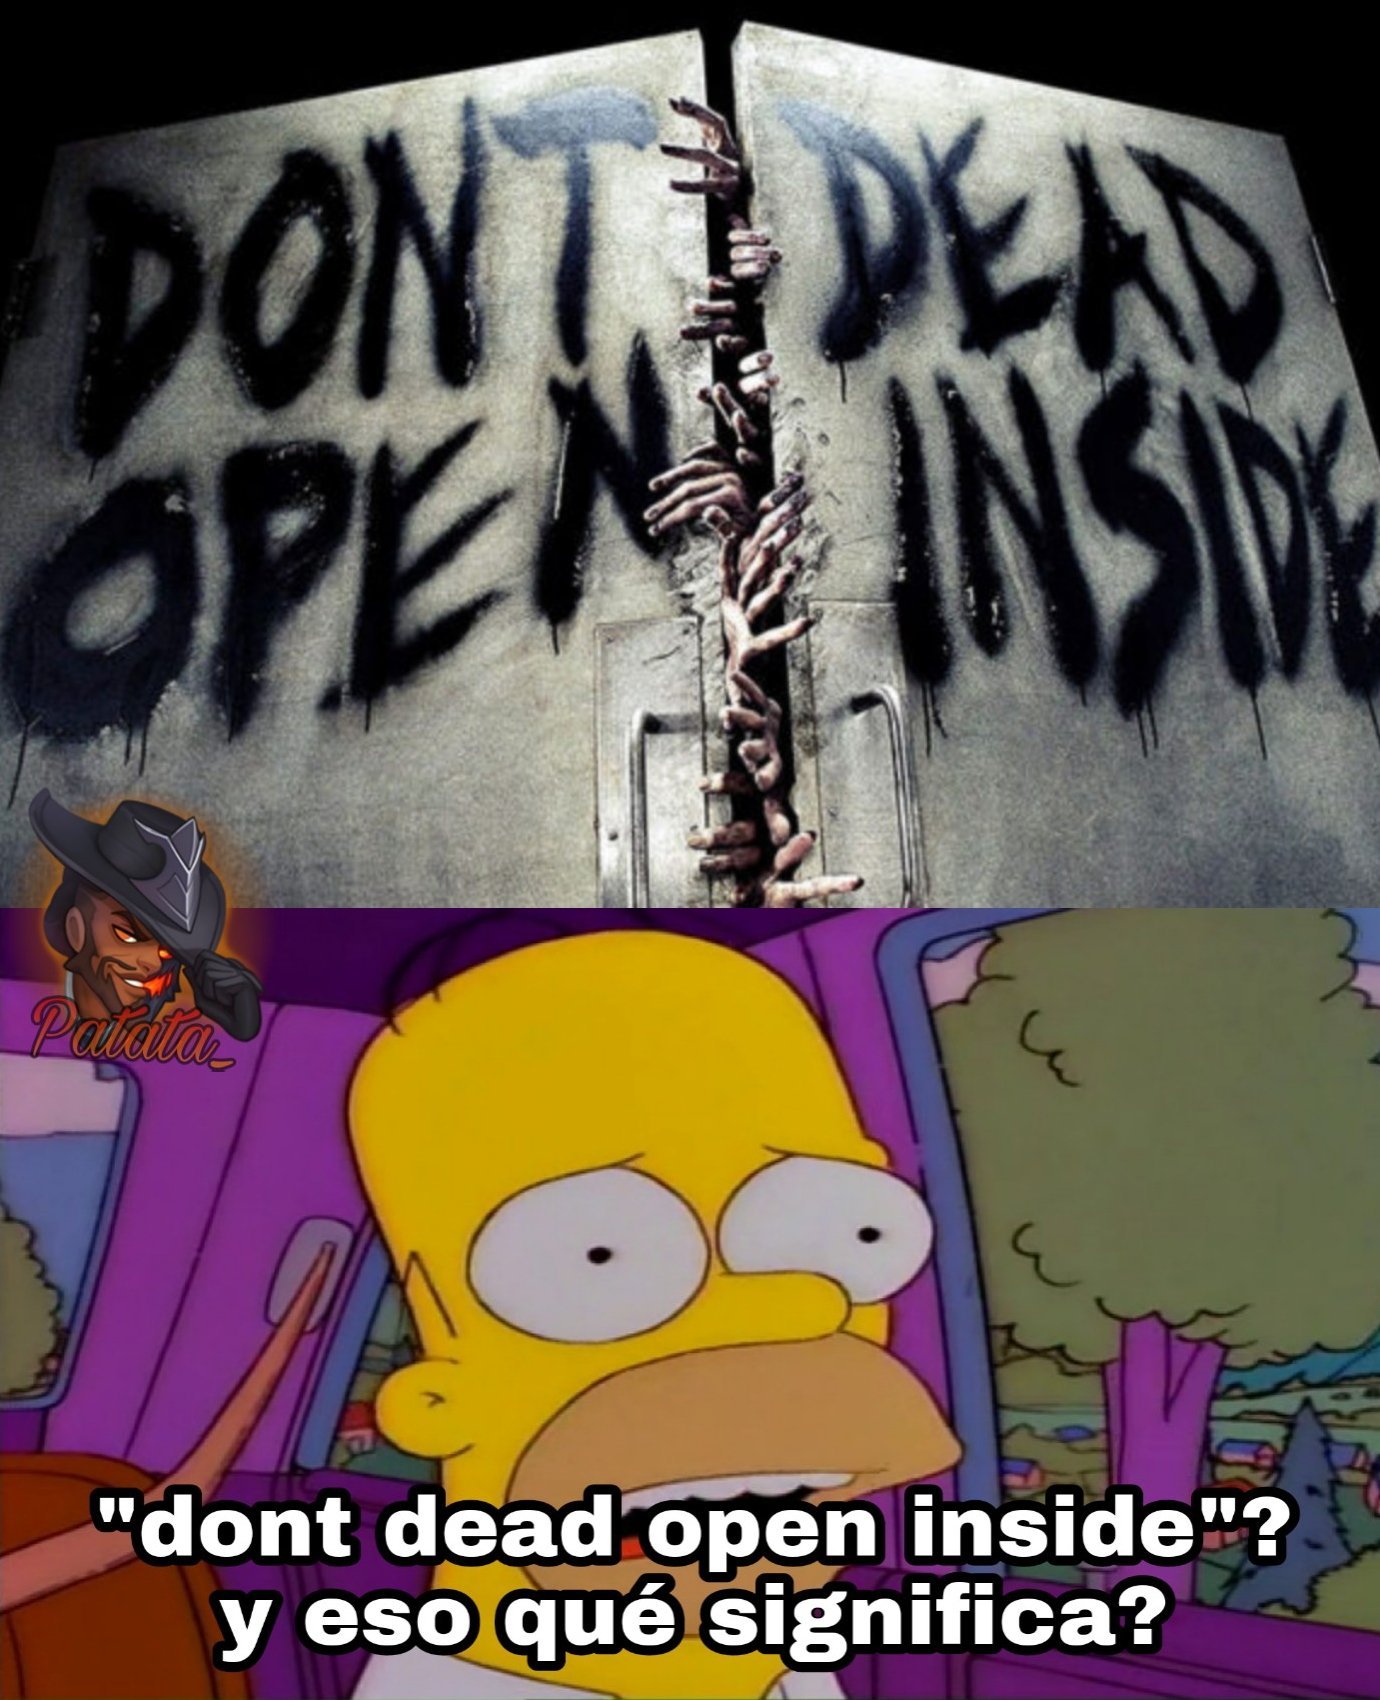 No muerte abre dentro - meme